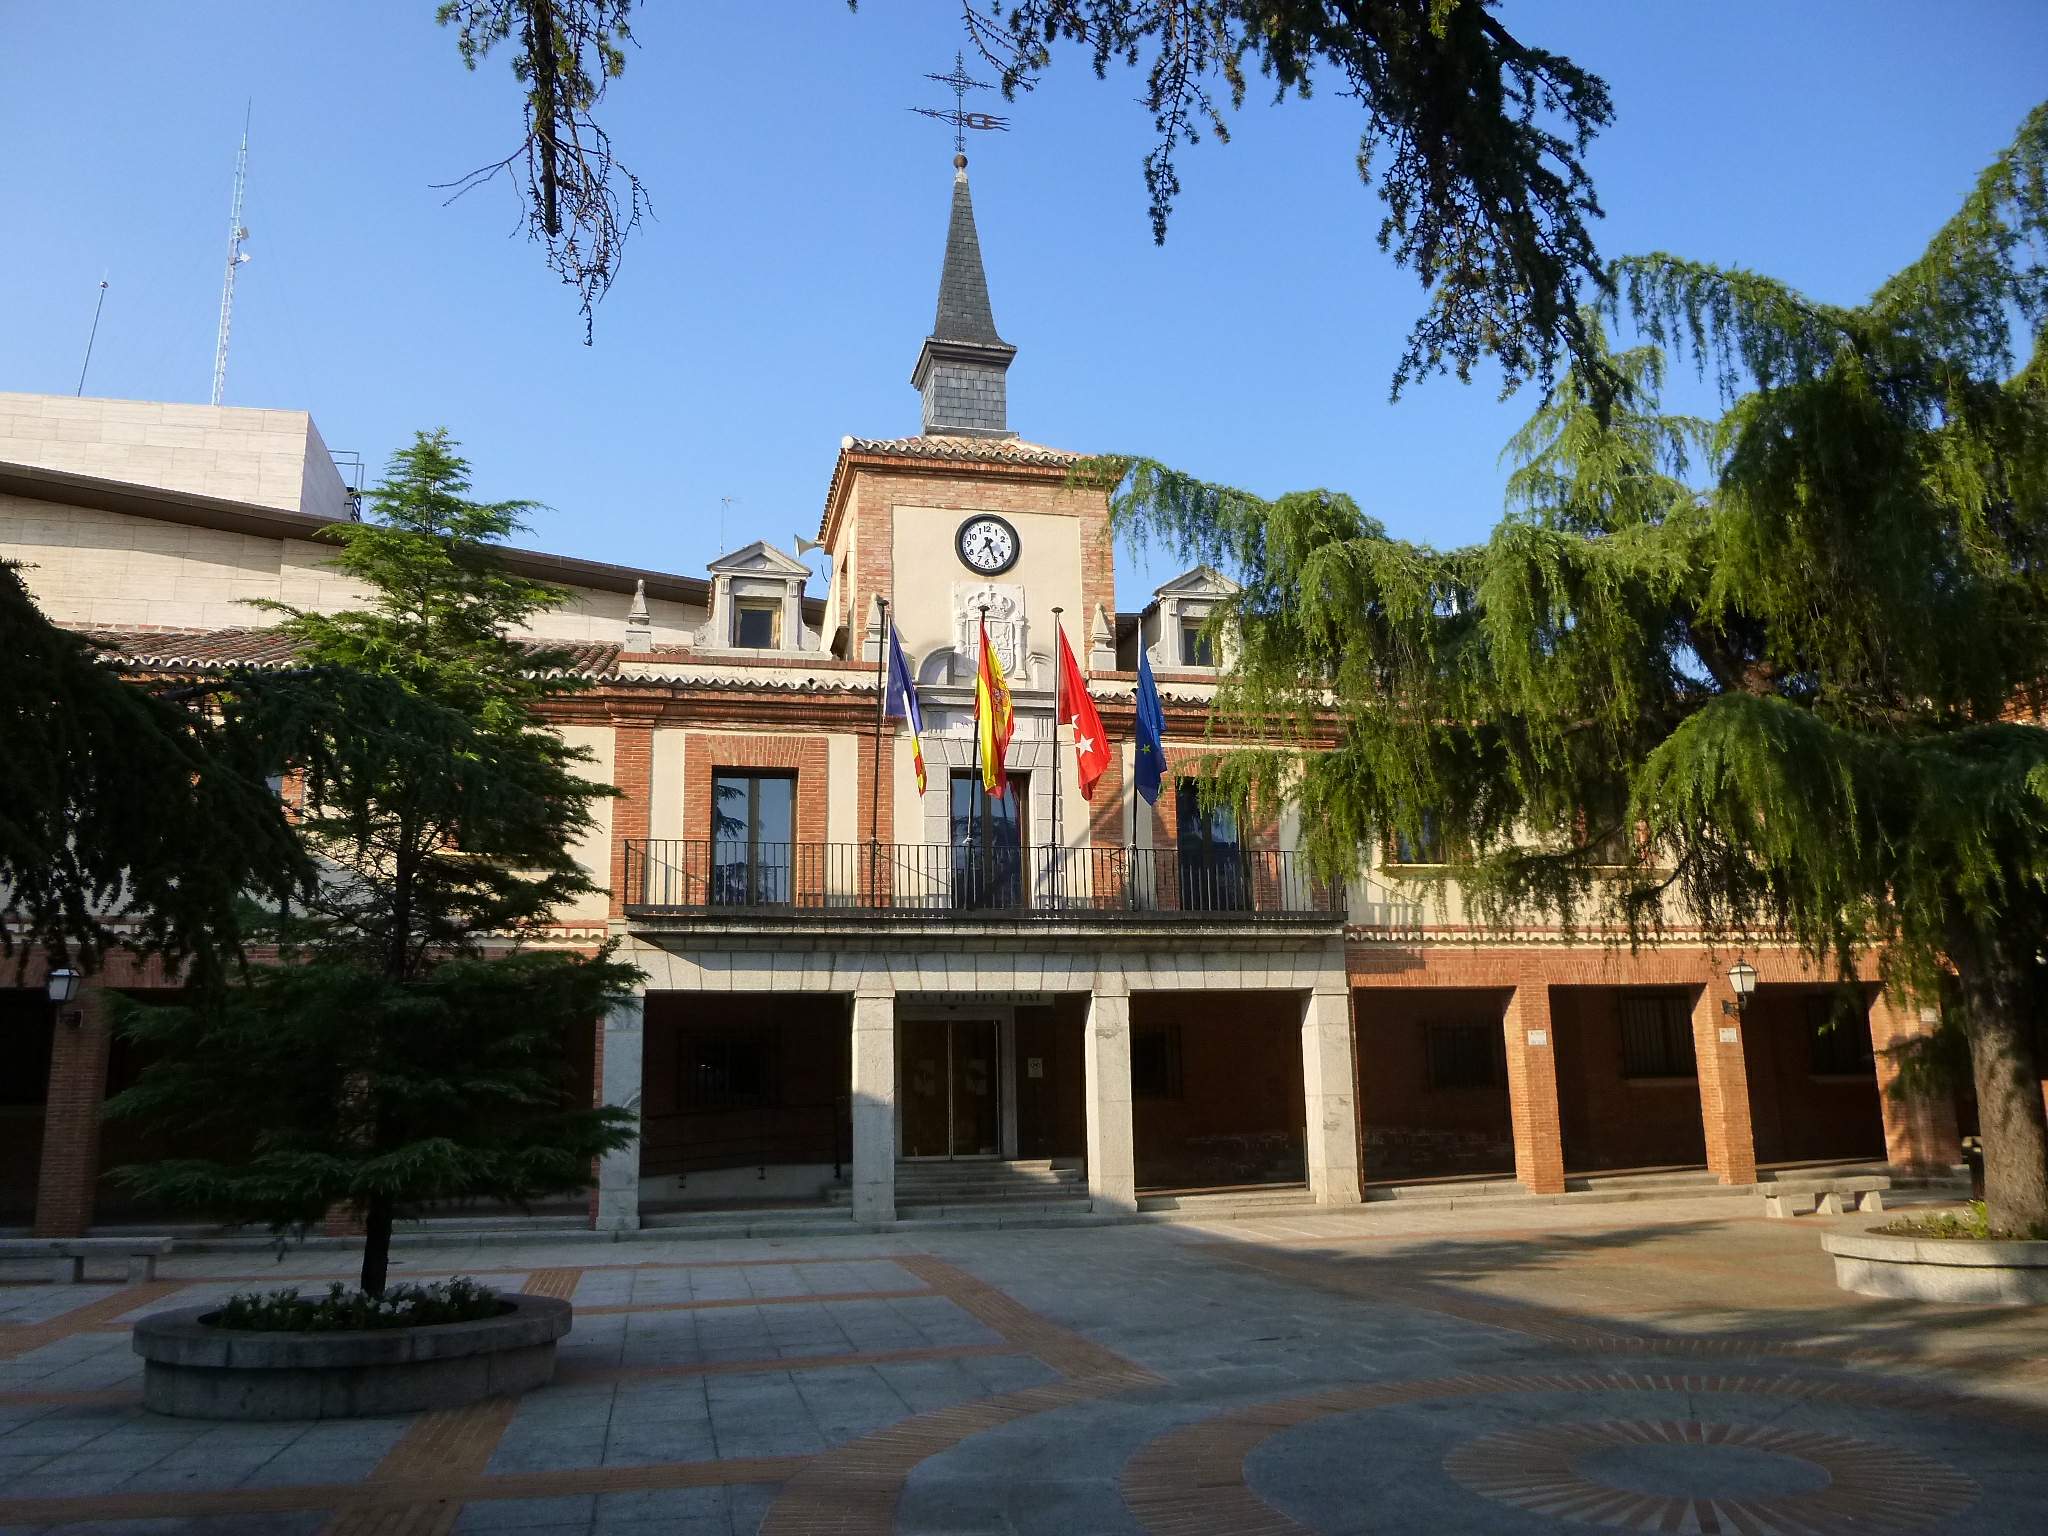 Sandymoor School Travelling to Visit Sister School in Madrid